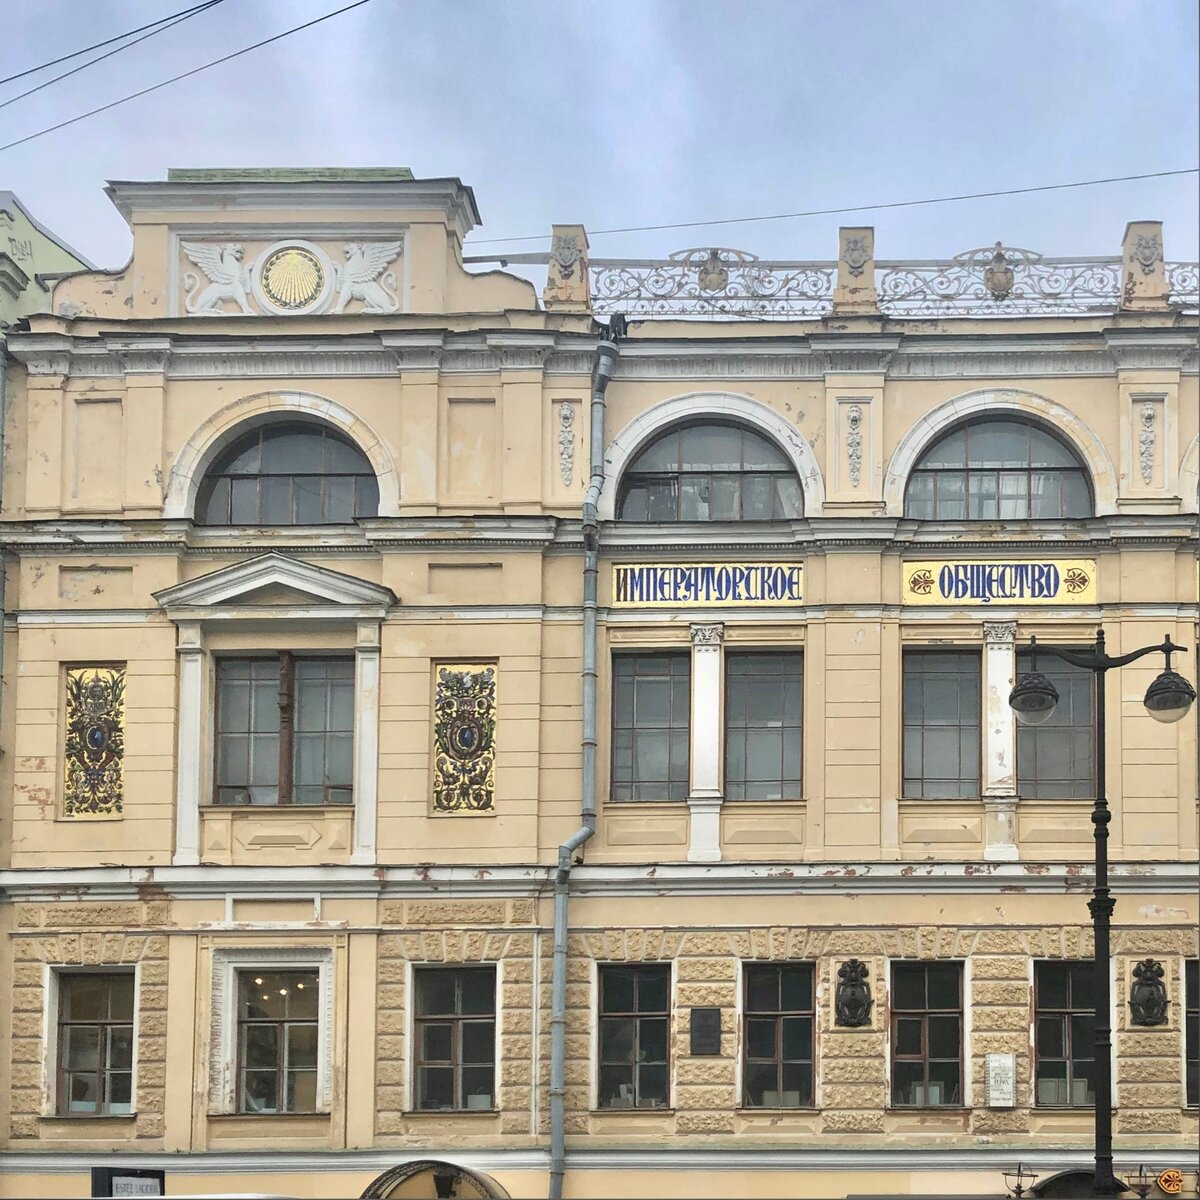 Необычное здание с большим световым фонарем, изящным кованым декором и золотой мозаикой на фасаде стало творческой резиденцией для художников 150 лет назад по воле императора Александра II.